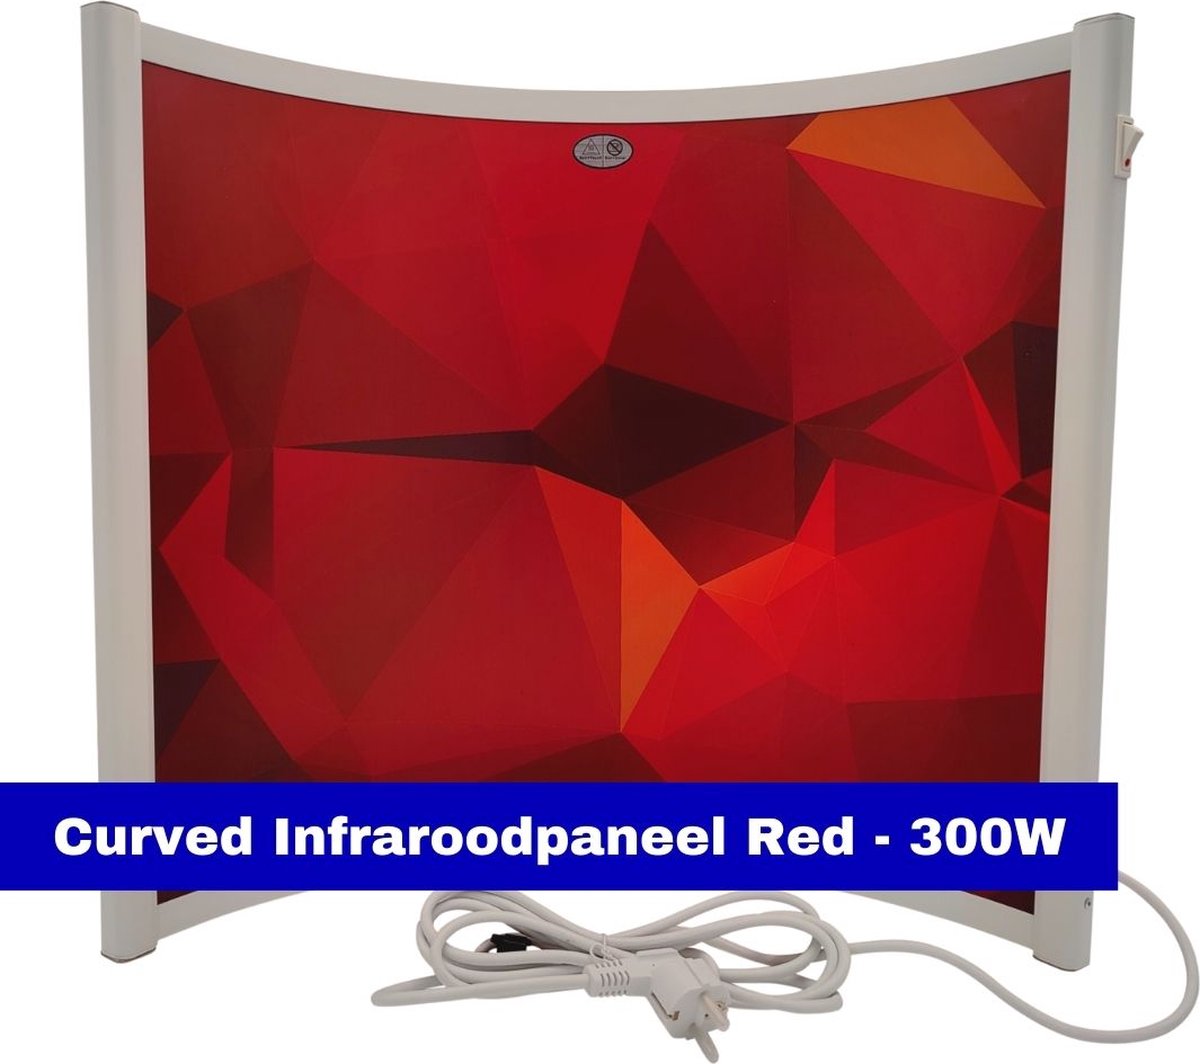 VH Verplaatsbaar infraroodpaneel - Curved Red - 300W - Gerichte warmte - IP65 - Rode print